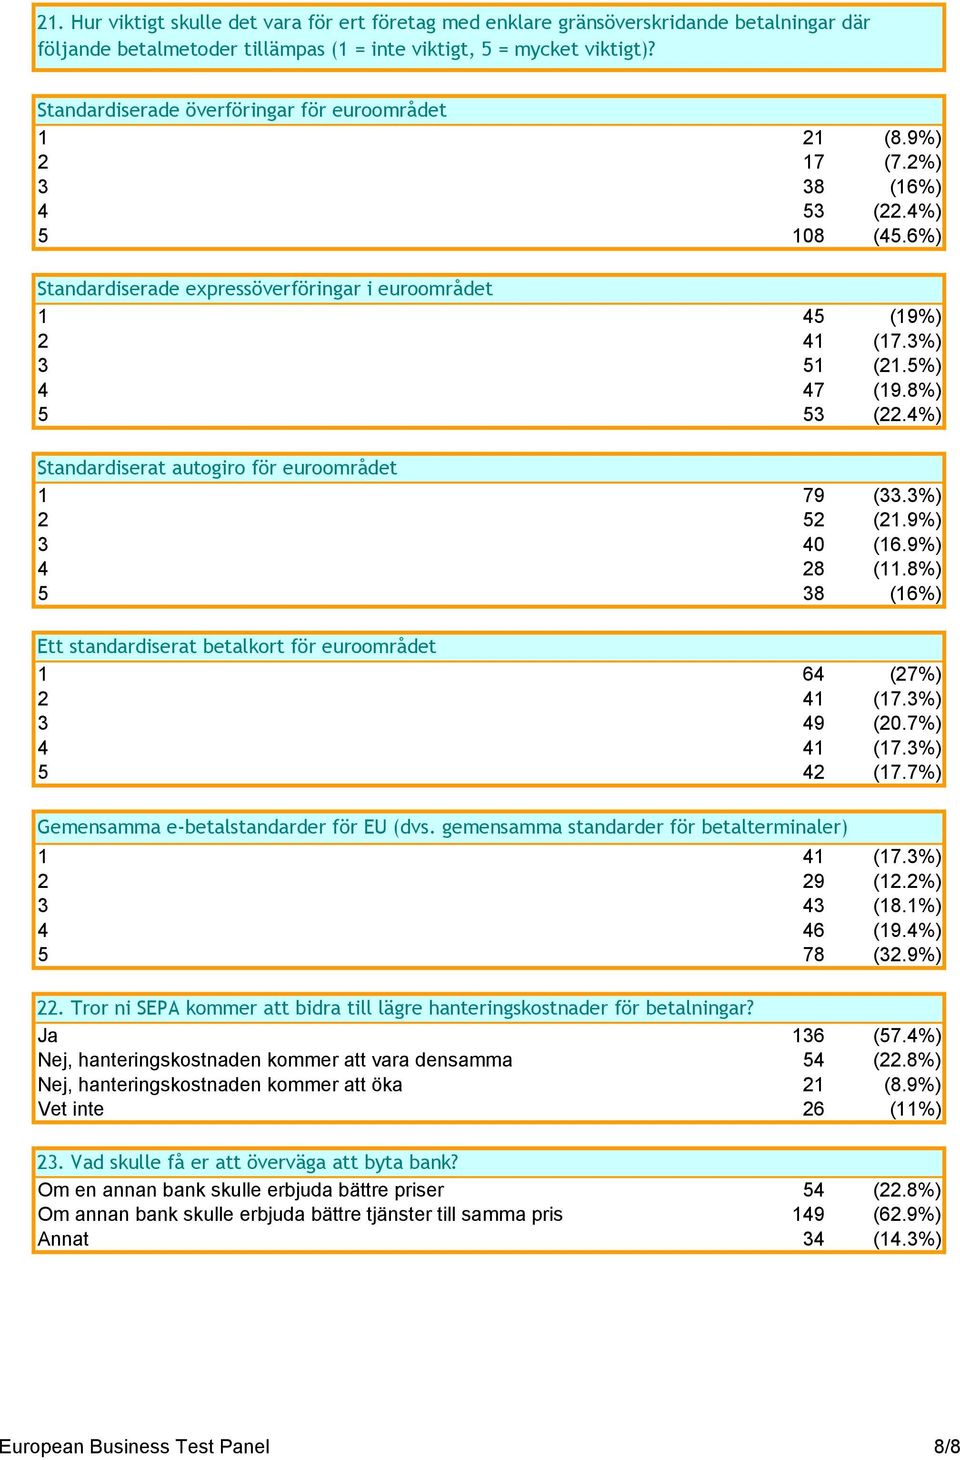 5%) 4 47 (19.8%) 5 53 (22.4%) Standardiserat autogiro för euroområdet 1 79 (33.3%) 2 52 (21.9%) 3 40 (16.9%) 4 28 (11.8%) 5 38 (16%) Ett standardiserat betalkort för euroområdet 1 64 (27%) 2 41 (17.